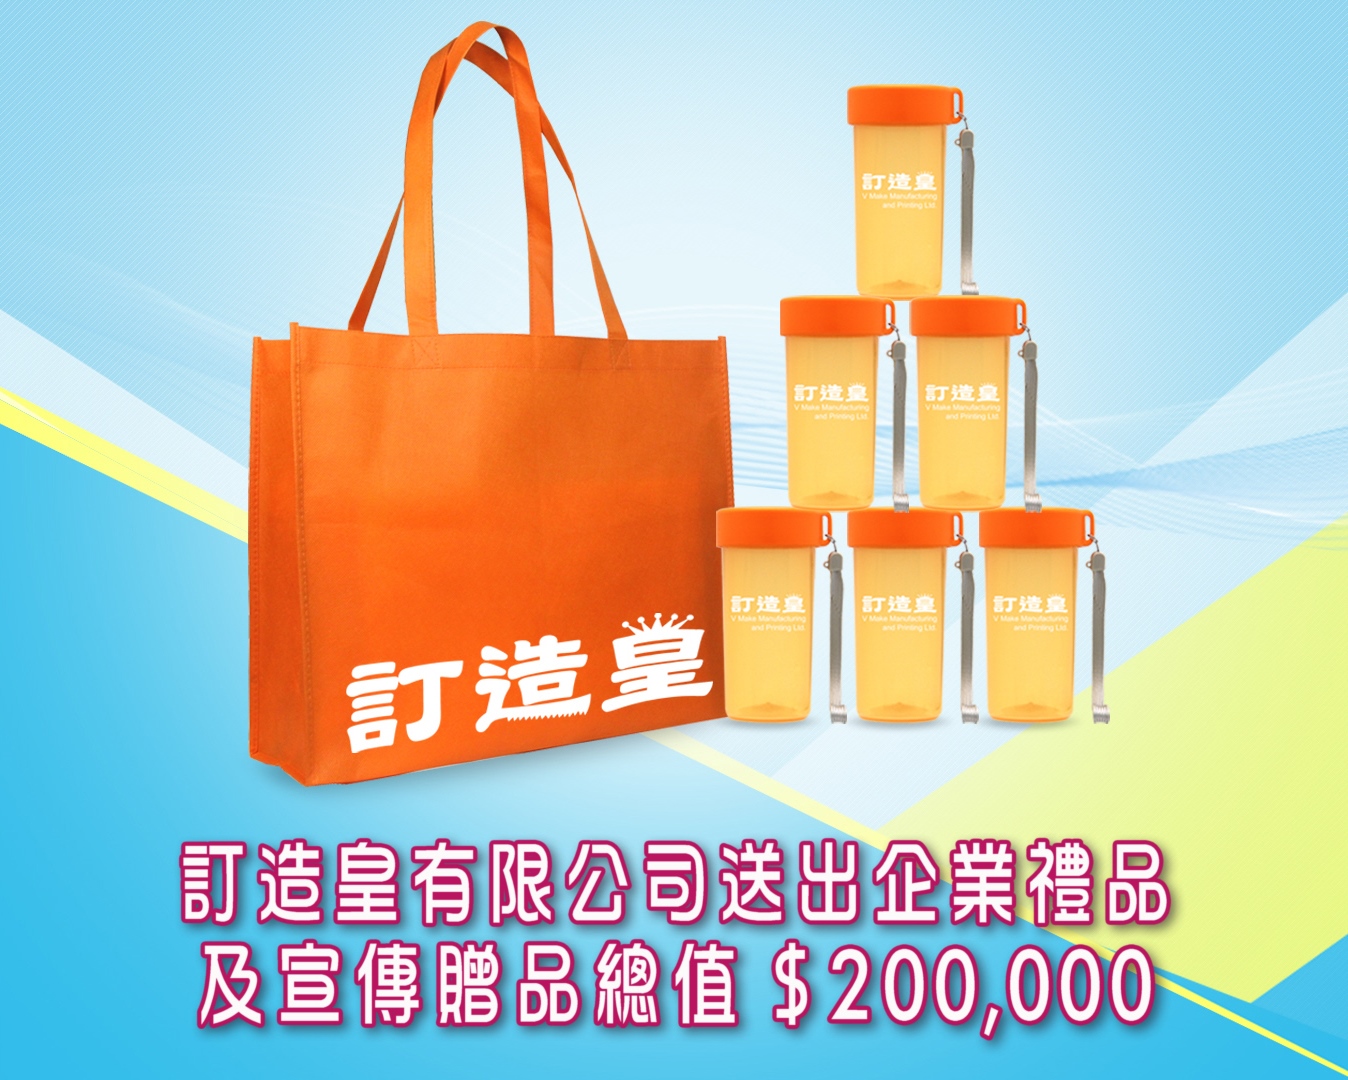 TVB 超級無敵獎門人獲本公司贊助企業禮品及宣傳贈品總值HK$200,000